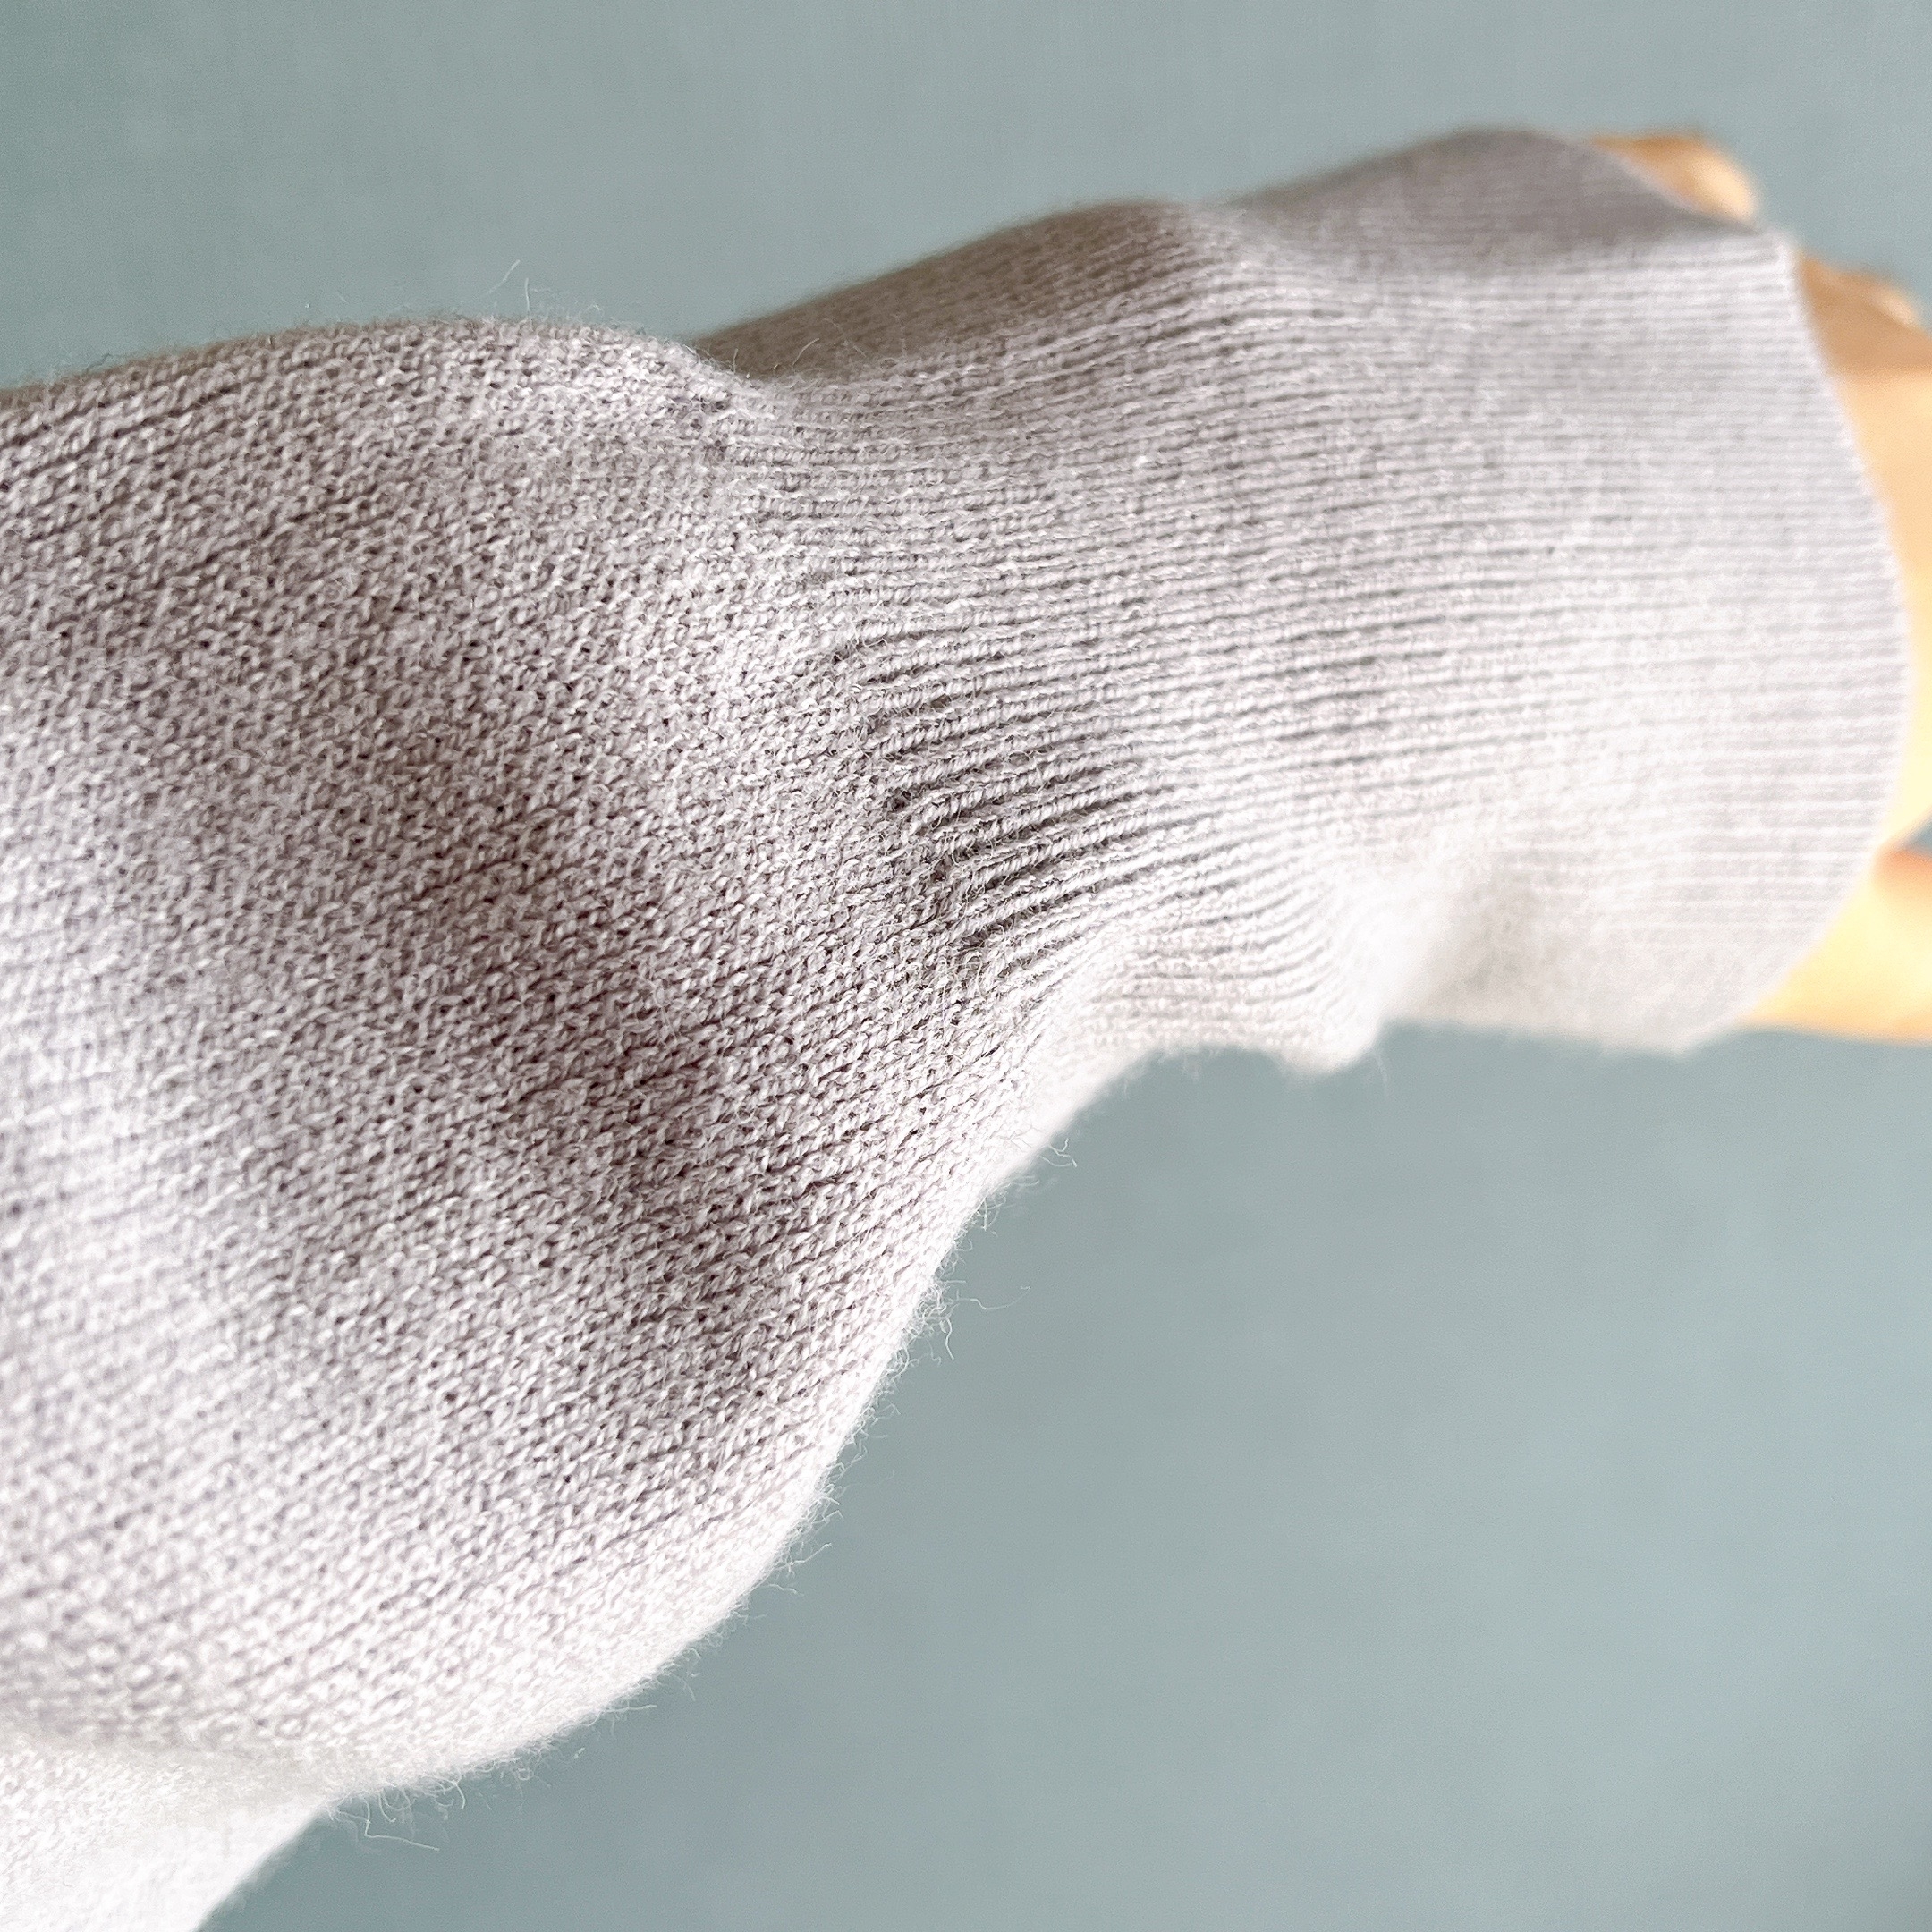 無印良品のオススメのトップス「洗えるミラノリブ編みハーフジップセーター」